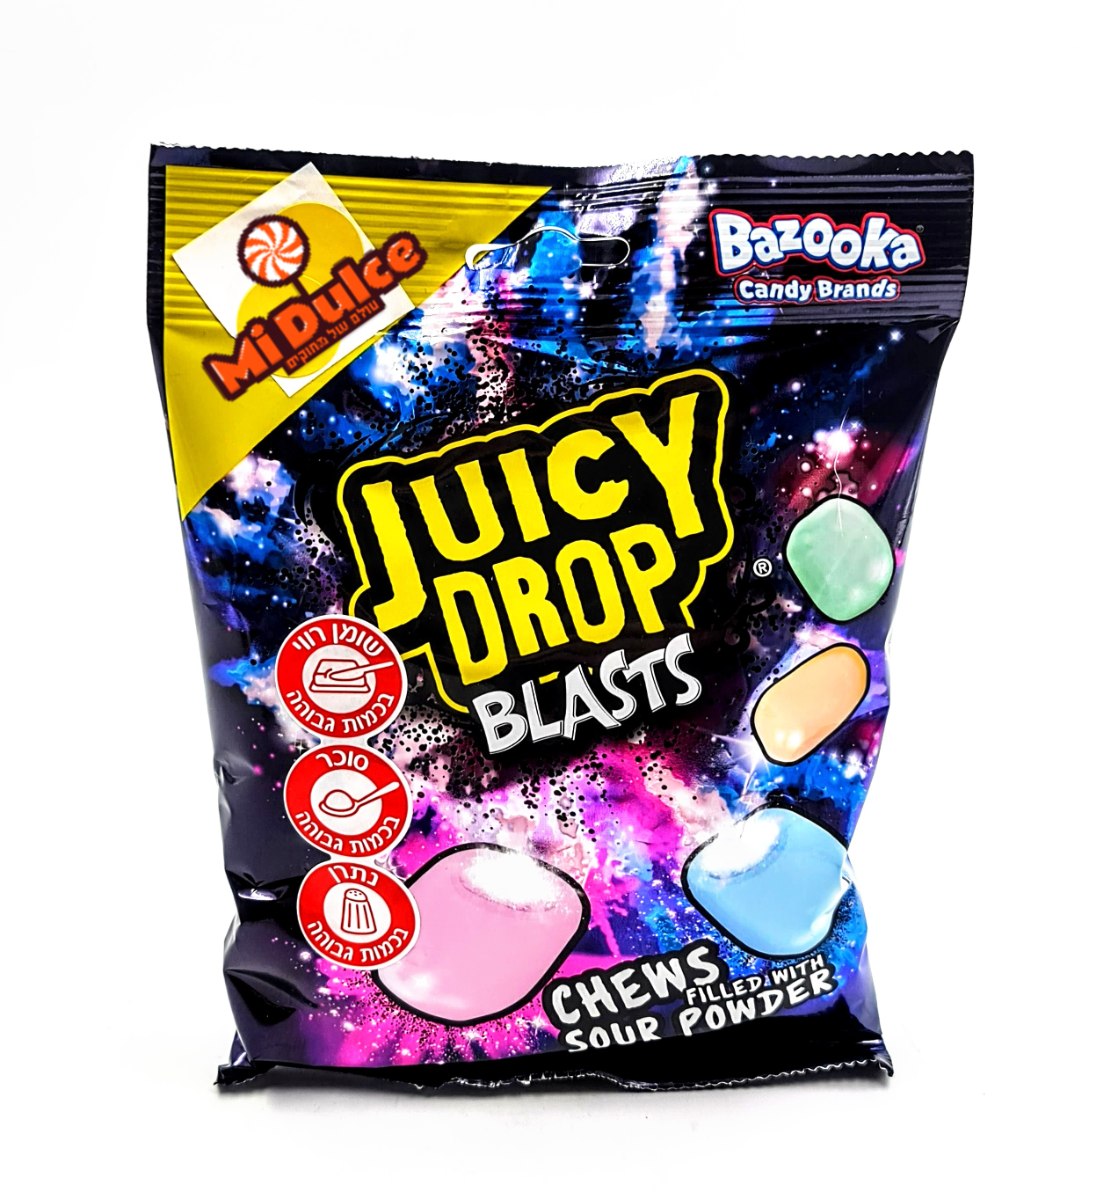 Juicy Drop Blasts